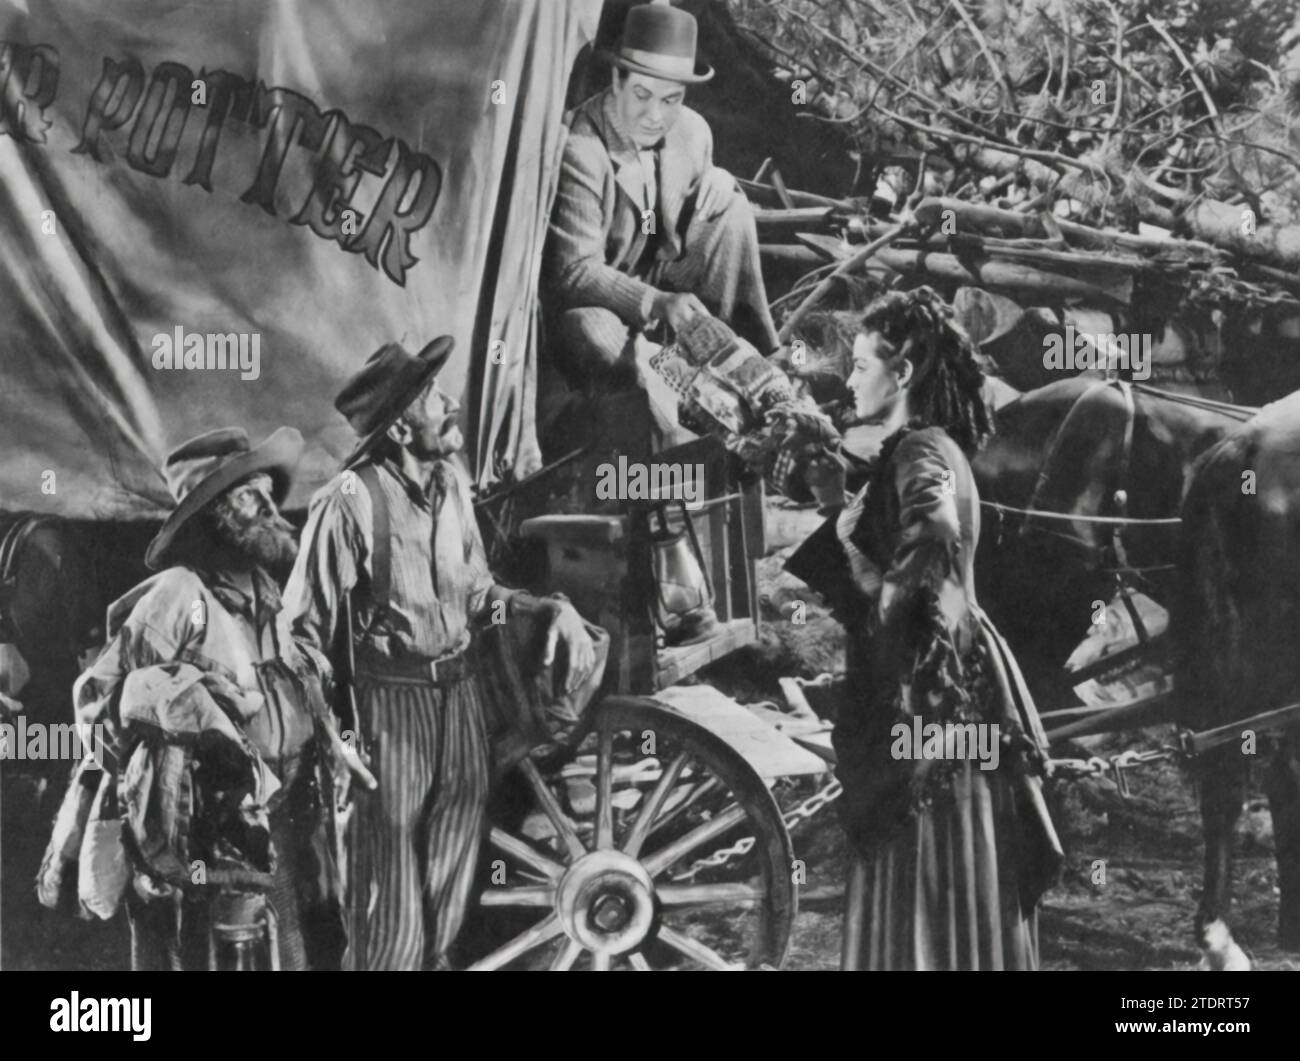 Bob Hope und Jane Russell spielen die Hauptrollen in „The Paleface“ (1948), einer klassischen Western-Komödie. Hope spielt den bummeligen Zahnarzt namens „schmerzloser“ Peter Potter, der unwissentlich zum Helden des Wilden Westens wird, während Russell Calamity Jane, einen Undercover-Agenten, porträtiert. Die Dynamik auf dem Bildschirm, die Hope's komödiantisches Timing mit Russells charismatischer Härte kombiniert, schafft eine perfekte Mischung aus Humor und Abenteuer. „The Paleface“ zeigt ihre einzigartigen Talente und bleibt ein beliebter Film für seine unterhaltsame Interpretation westlicher Tropen. Stockfoto